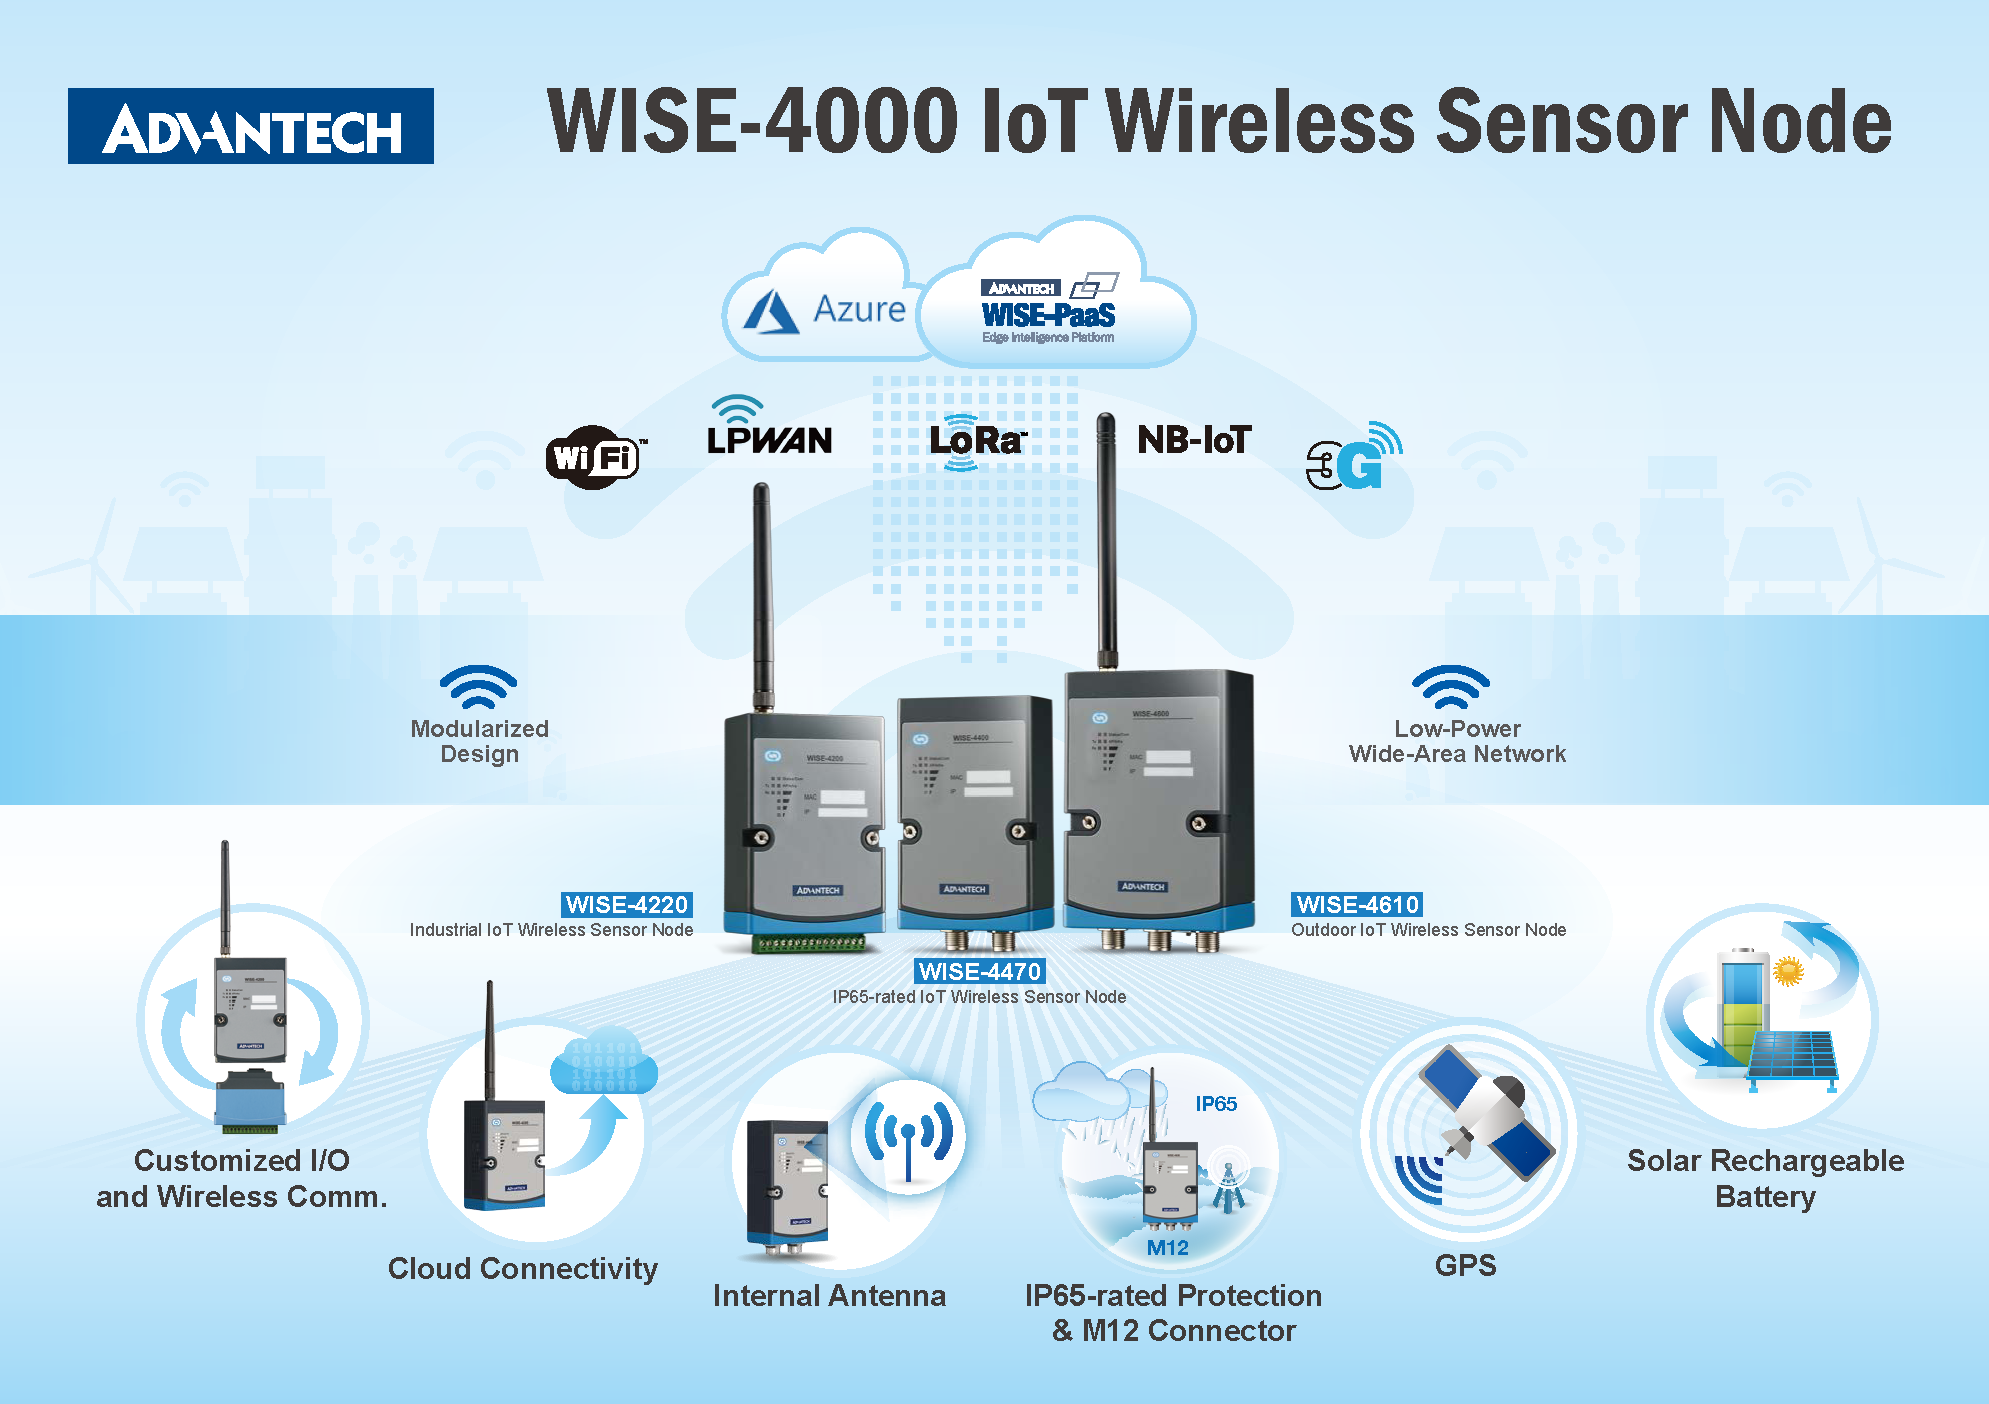 Figure 2: IoT wireless sensor nodes. Source: Advantech